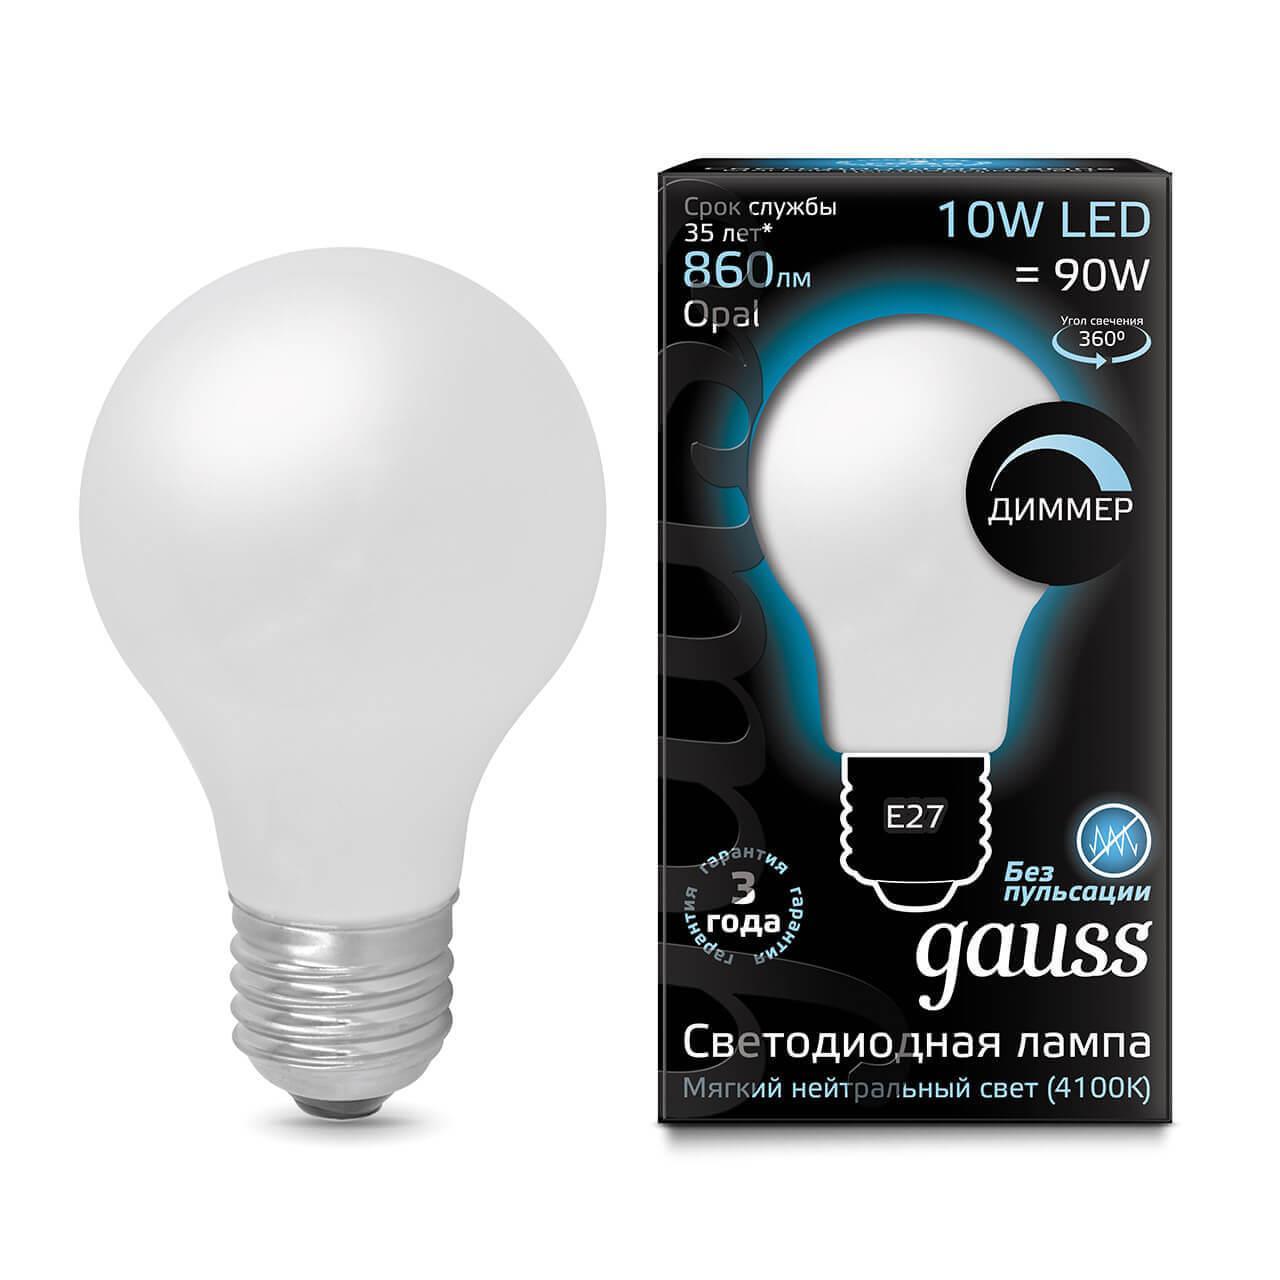 Gauss Лампа Filament А60 10W 860lm 4100К Е27 milky диммируемая LED